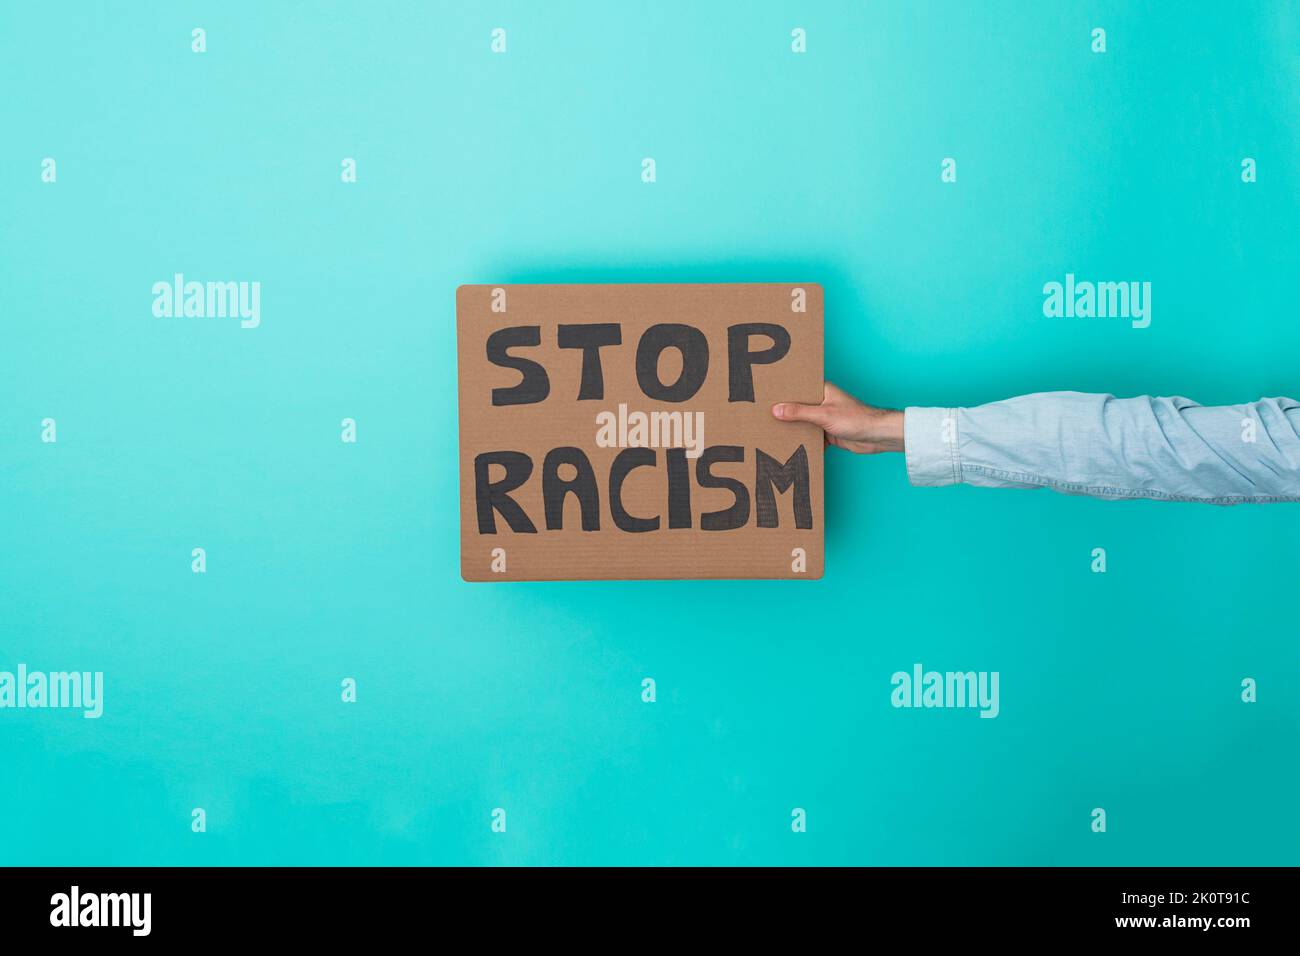 Crop anonyme Person zeigt Banner mit Stop Rassismus Text auf blauem Hintergrund - Rassismus und Gleichheit Konzept Stockfoto